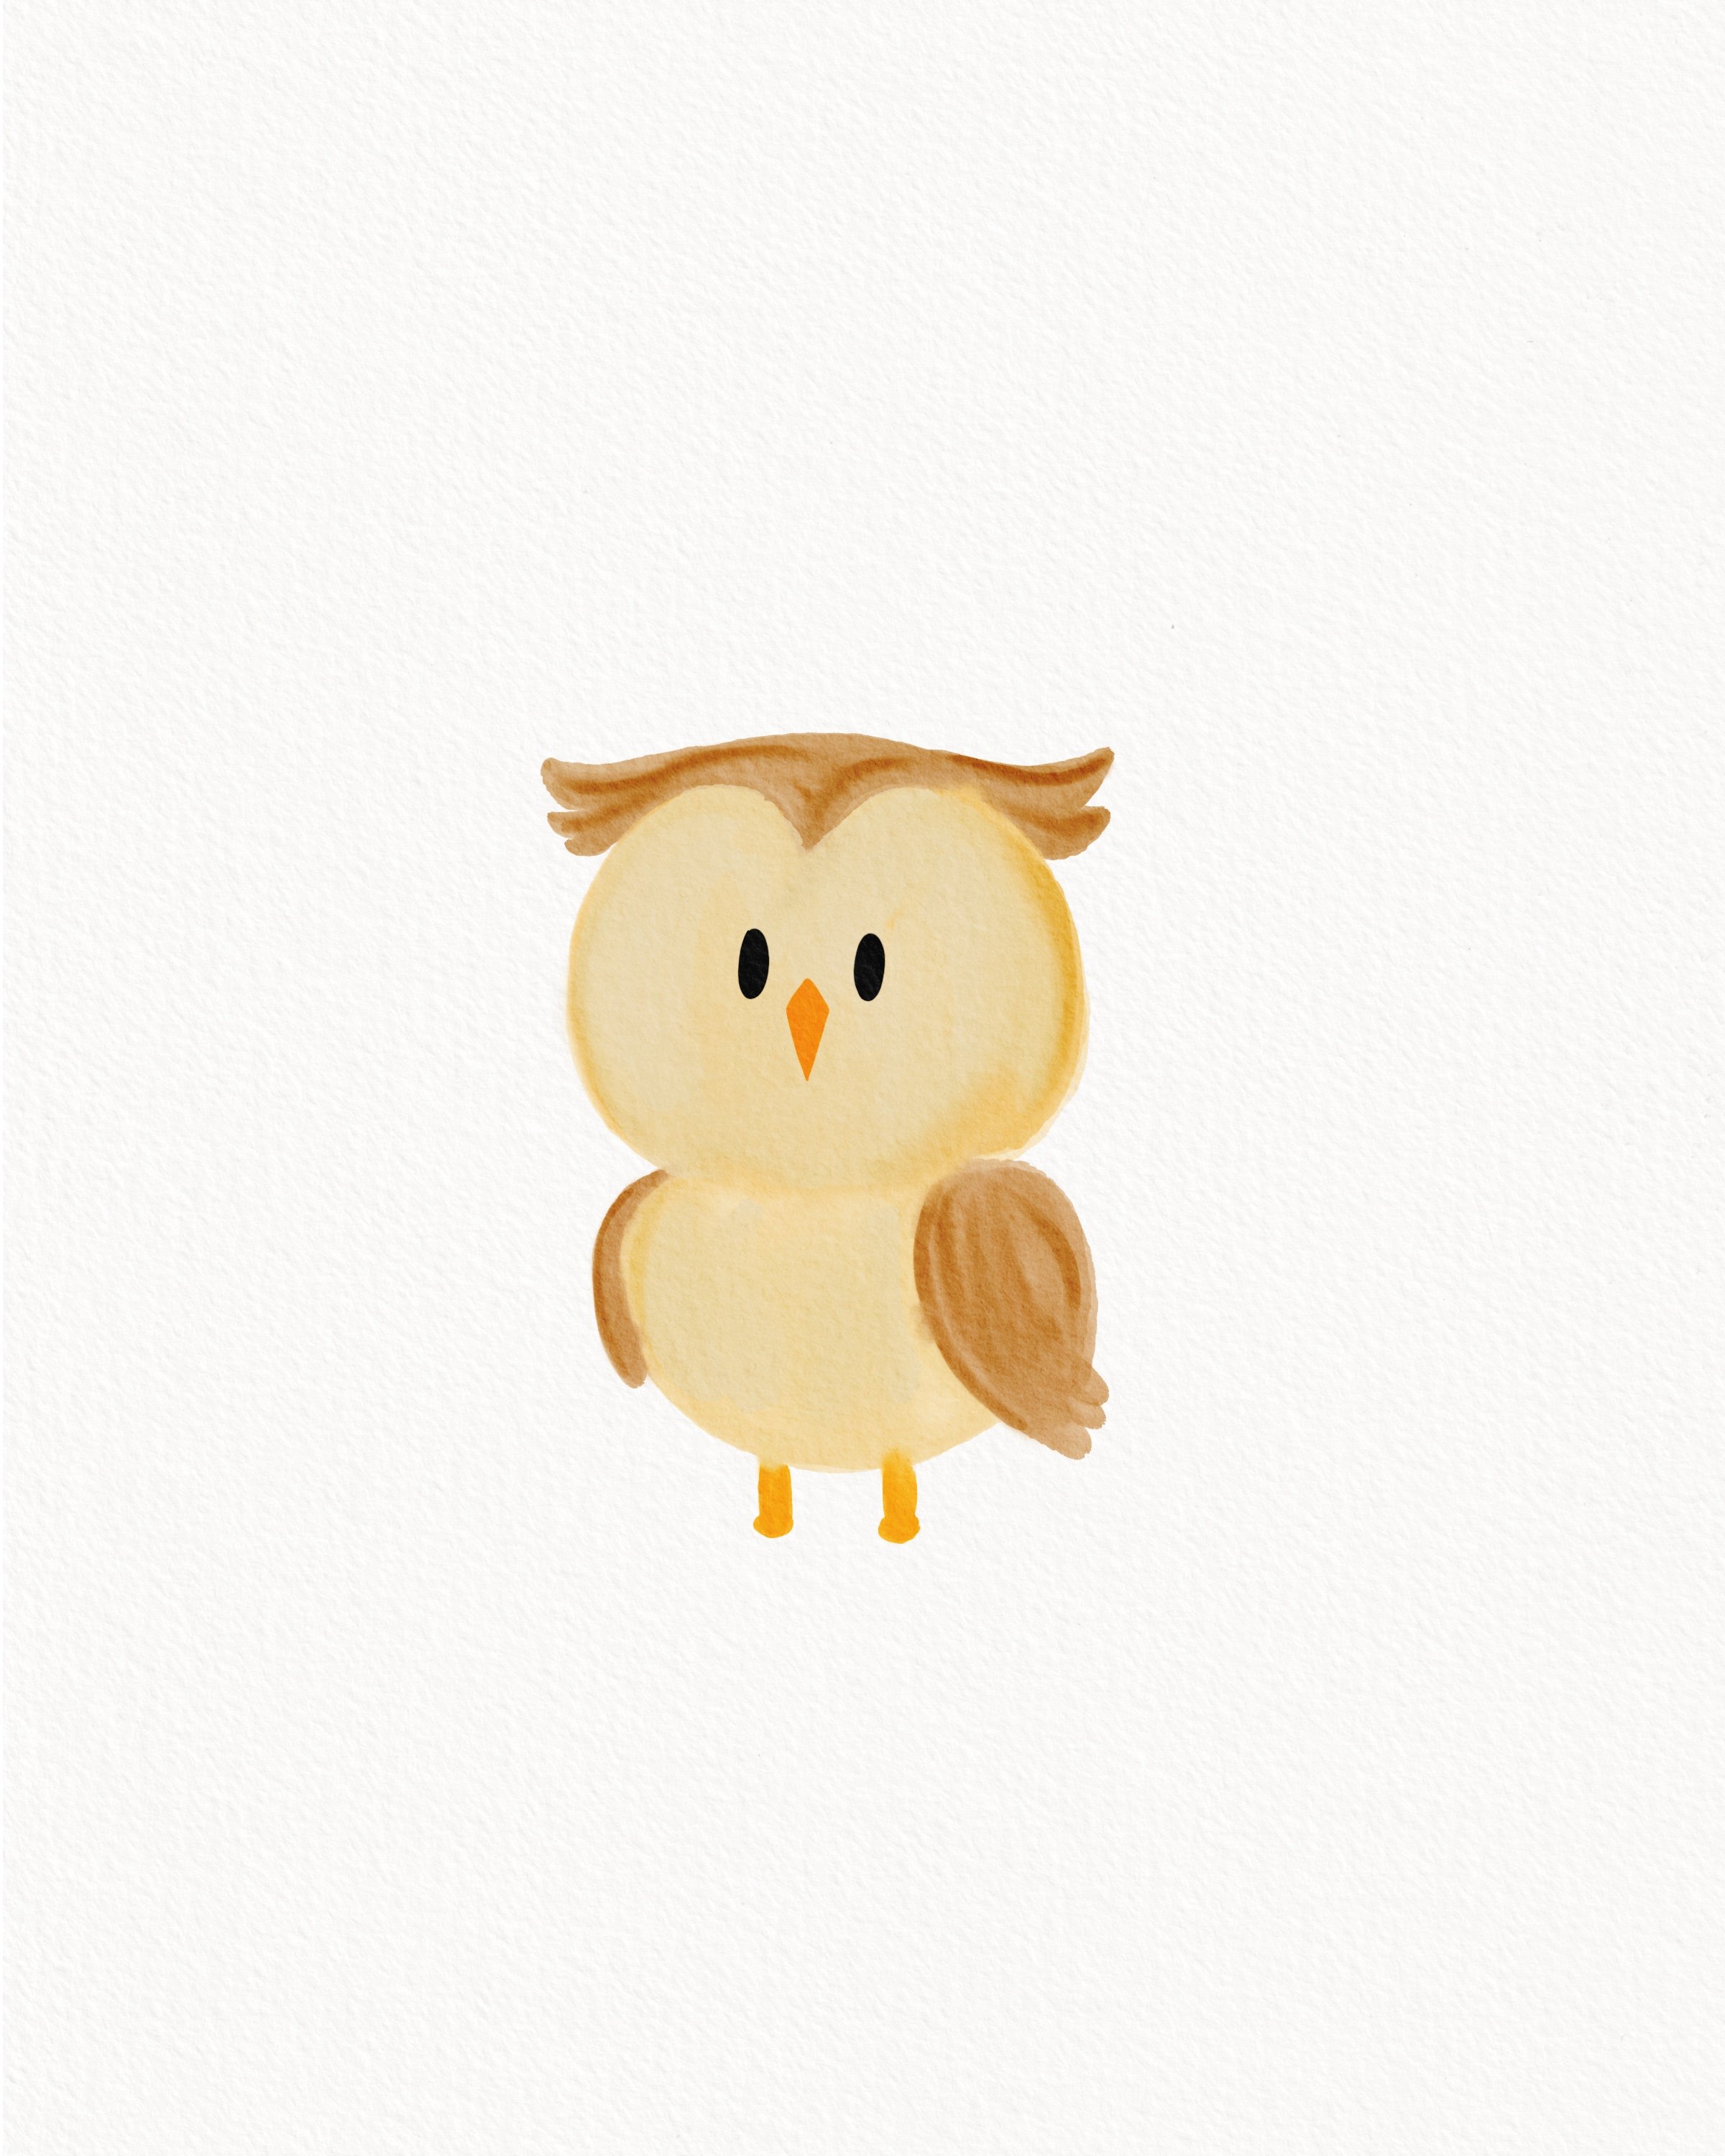 Owl Watercolor Etsy.jpg